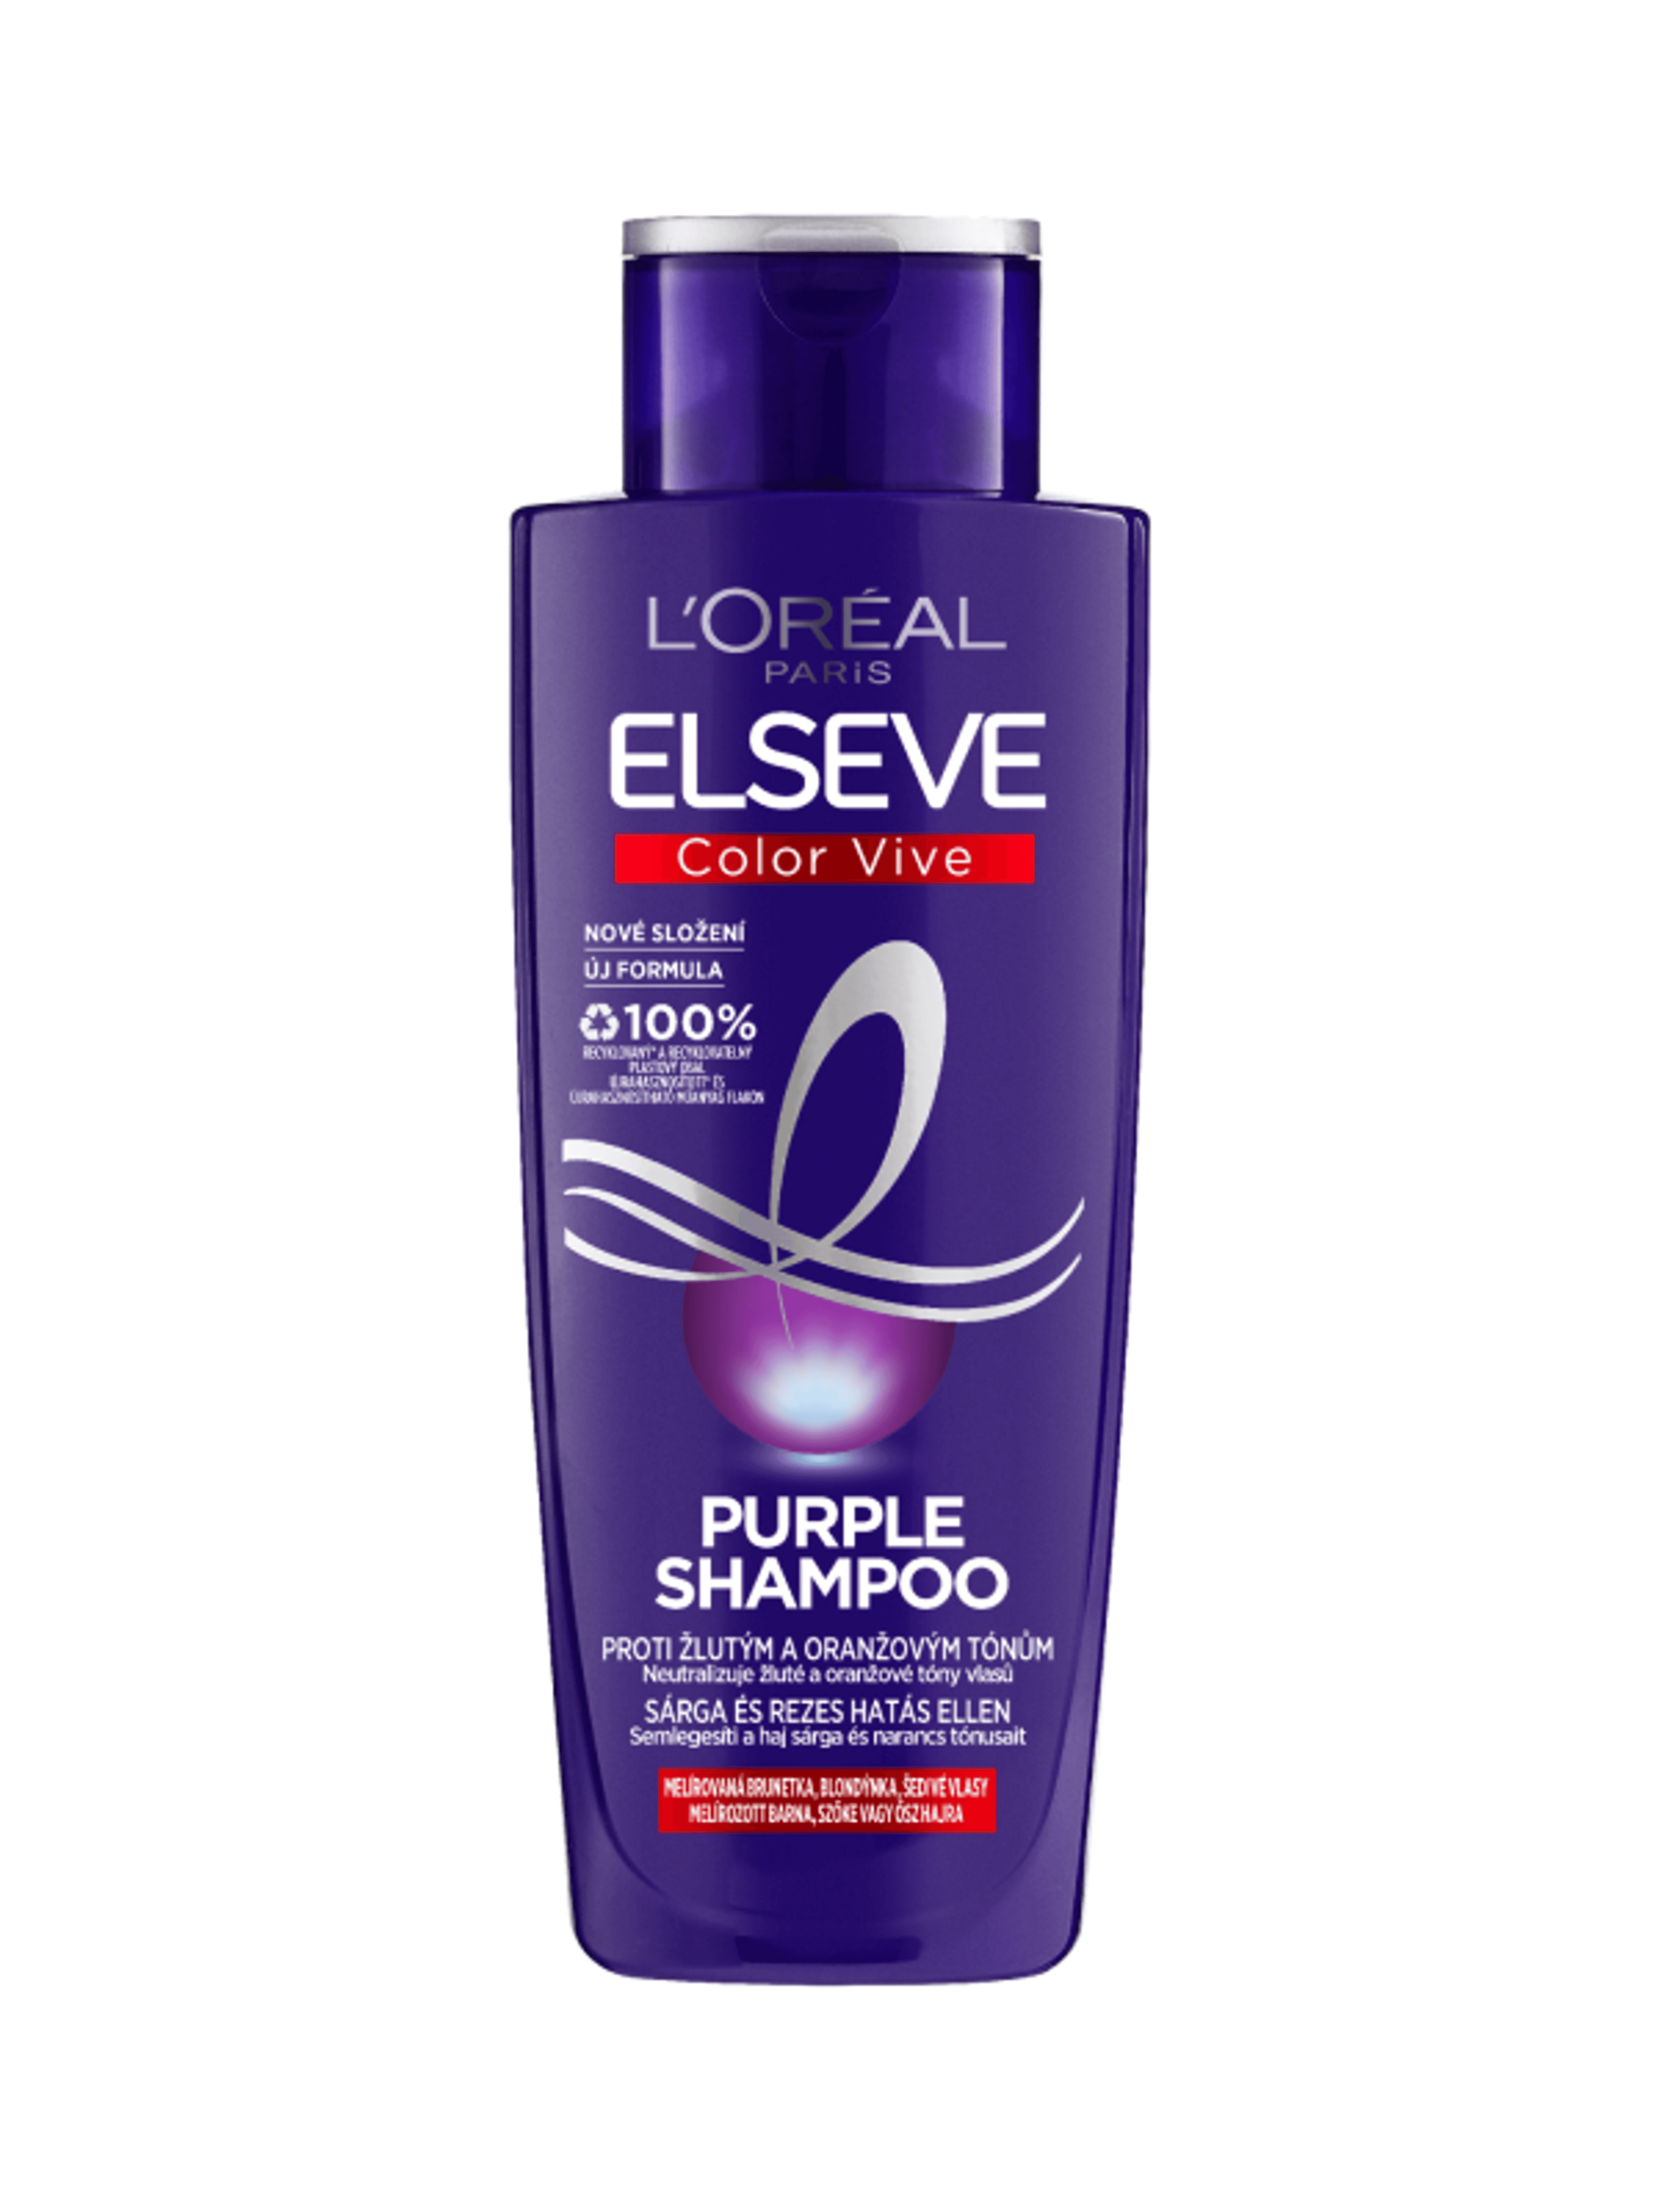 L'Oréal Paris Elseve Color Vive Purple sampon sárga és rezes hatás ellen - 200 ml-2